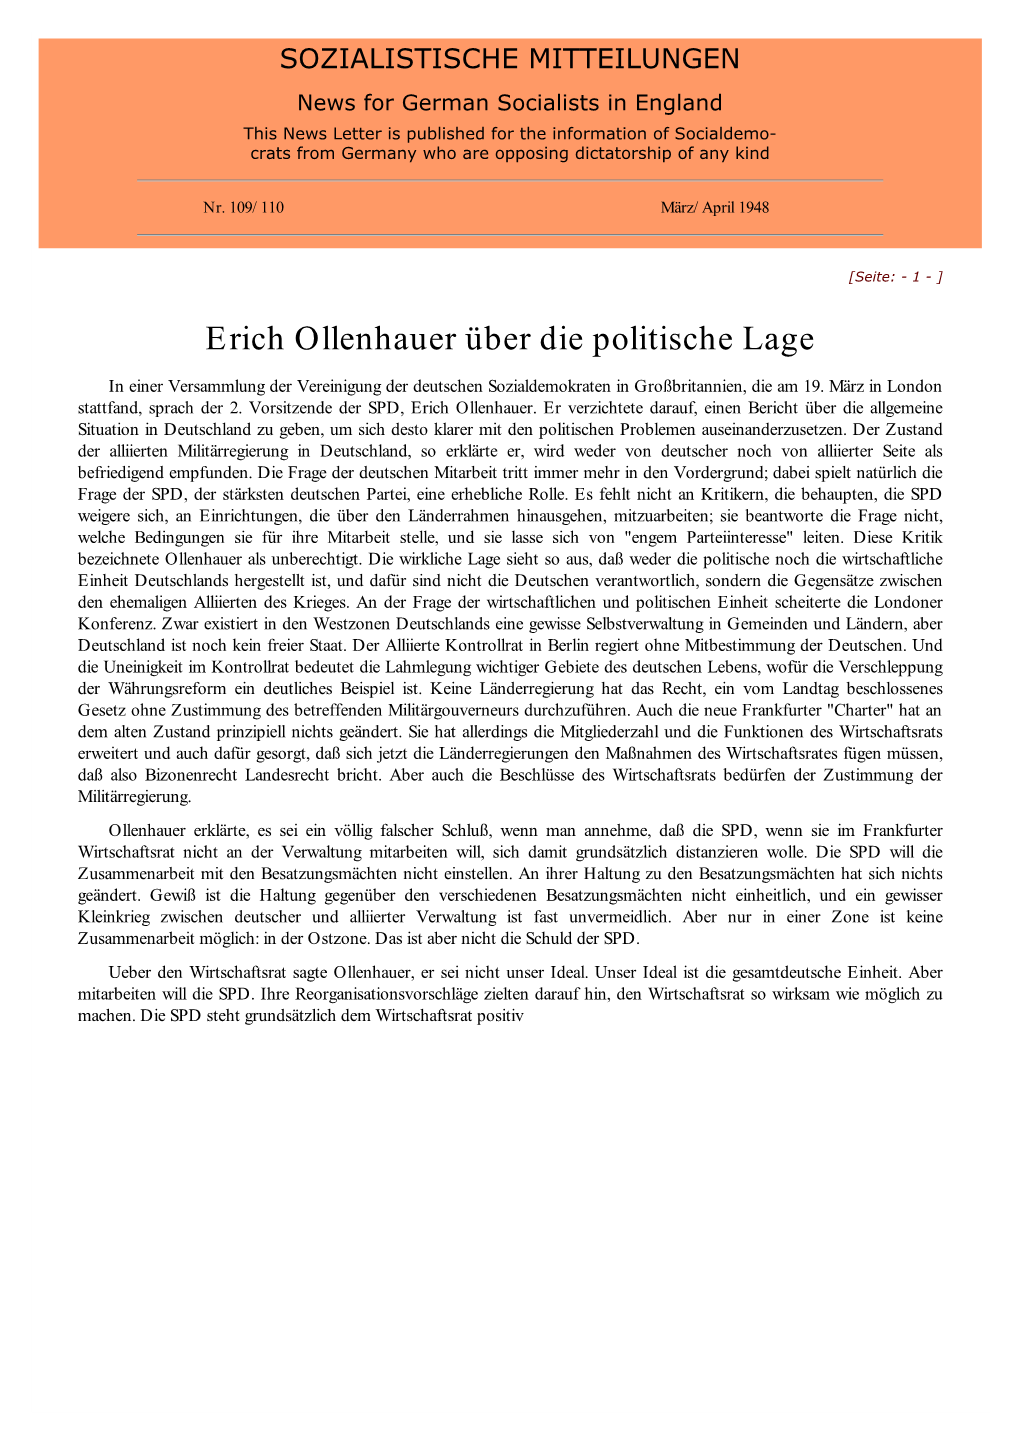 Erich Ollenhauer Über Die Politische Lage